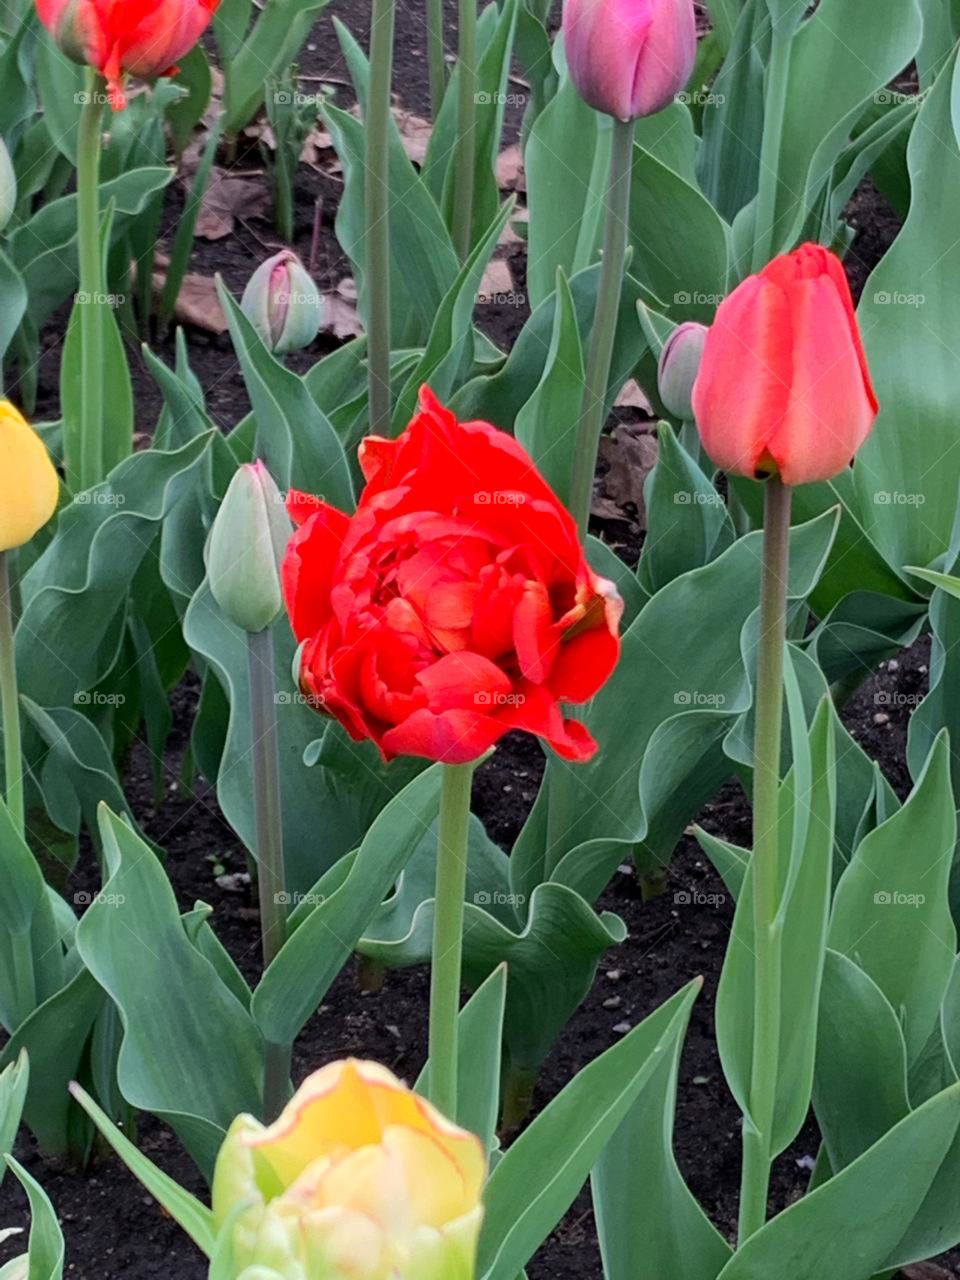 Tulip lover